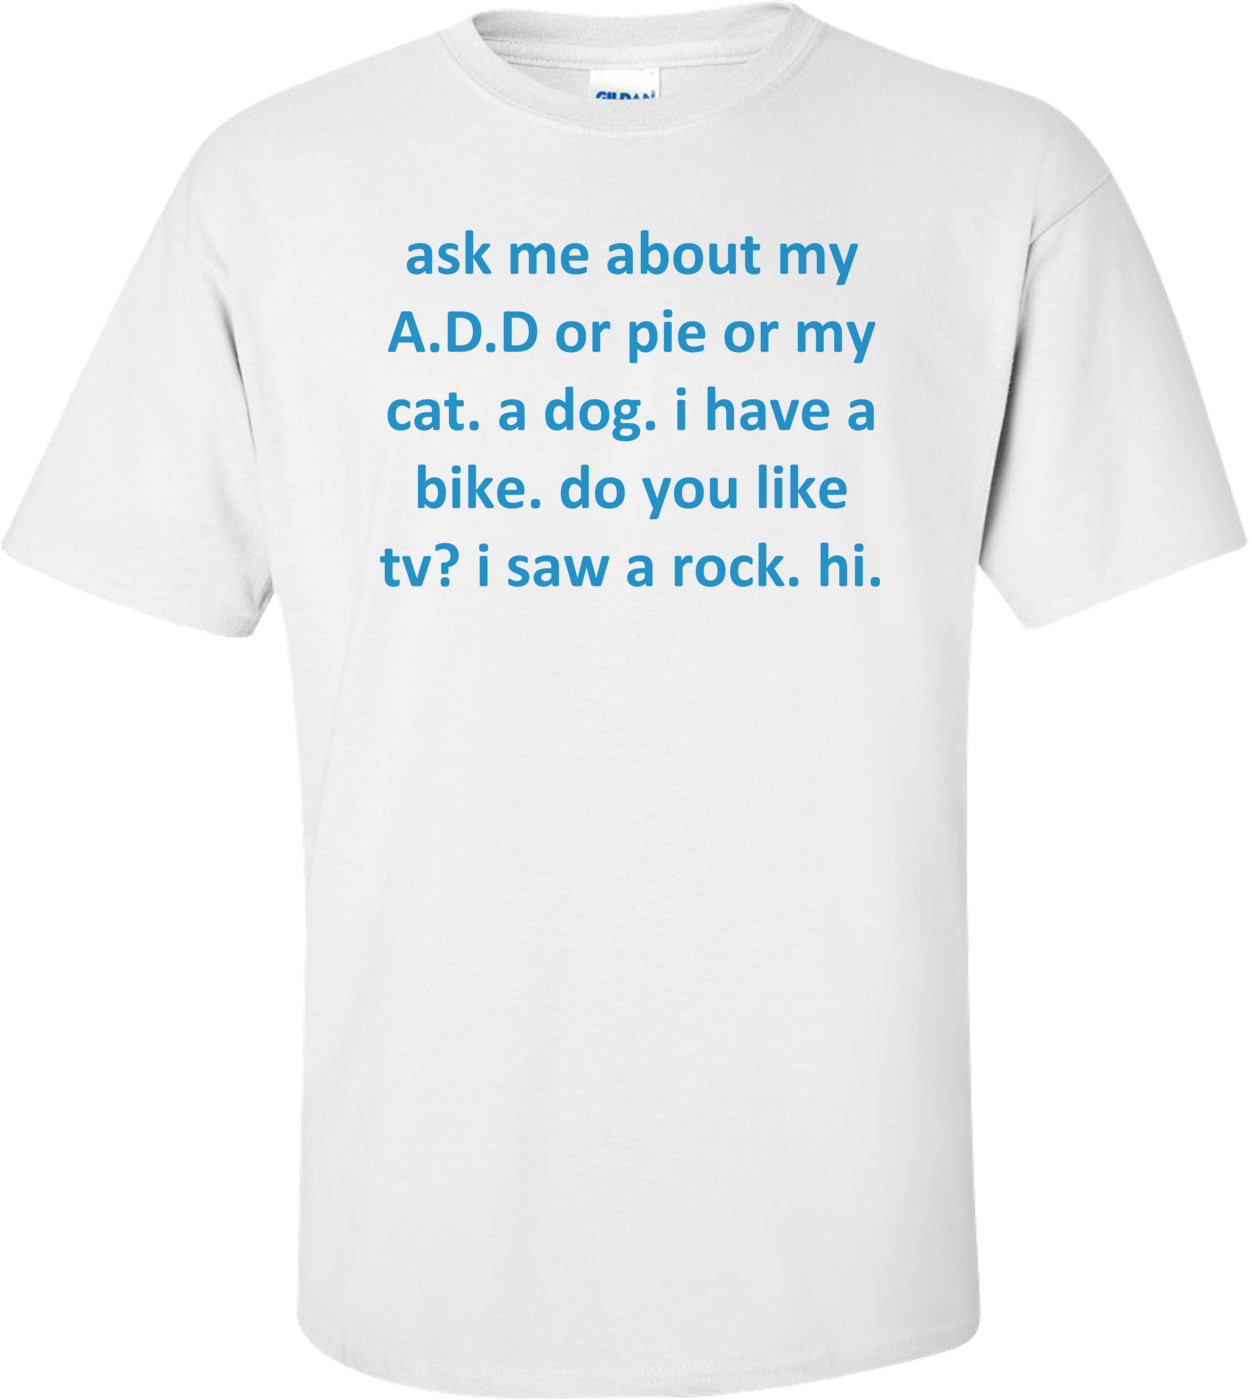 ask me about my A.D.D or pie or my cat. a dog. i have a bike. do you like tv? i saw a rock. hi.